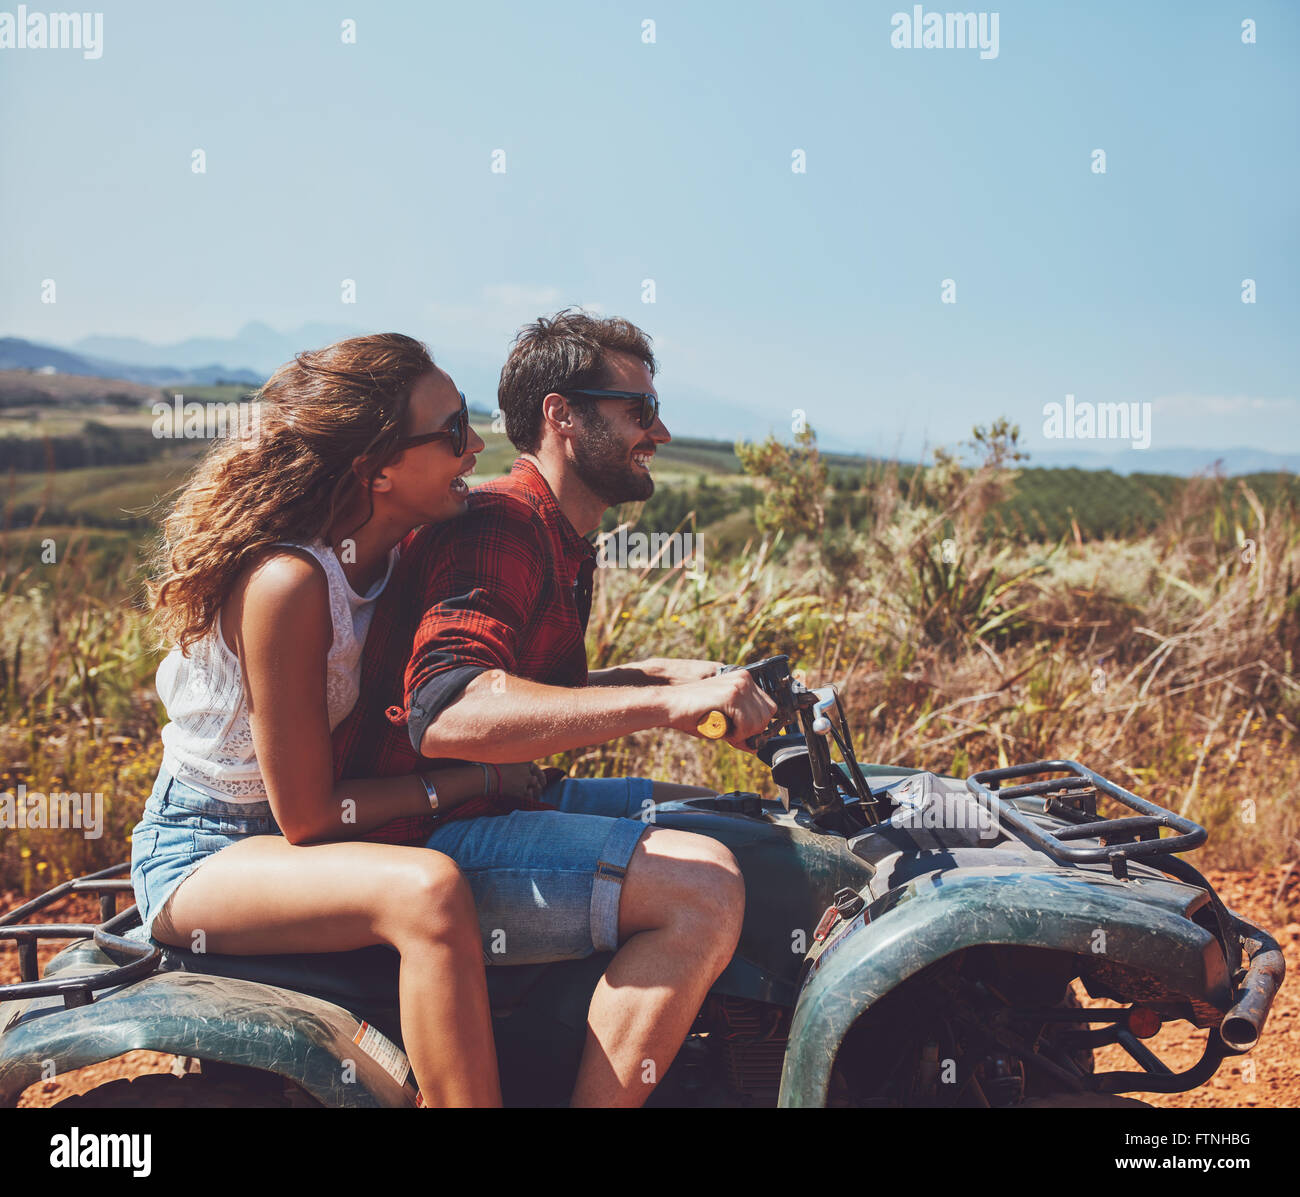 Side view of young man and woman riding sur un quad bike sur les vacances d'été. Couple vacances sur un quad en countrysi Banque D'Images